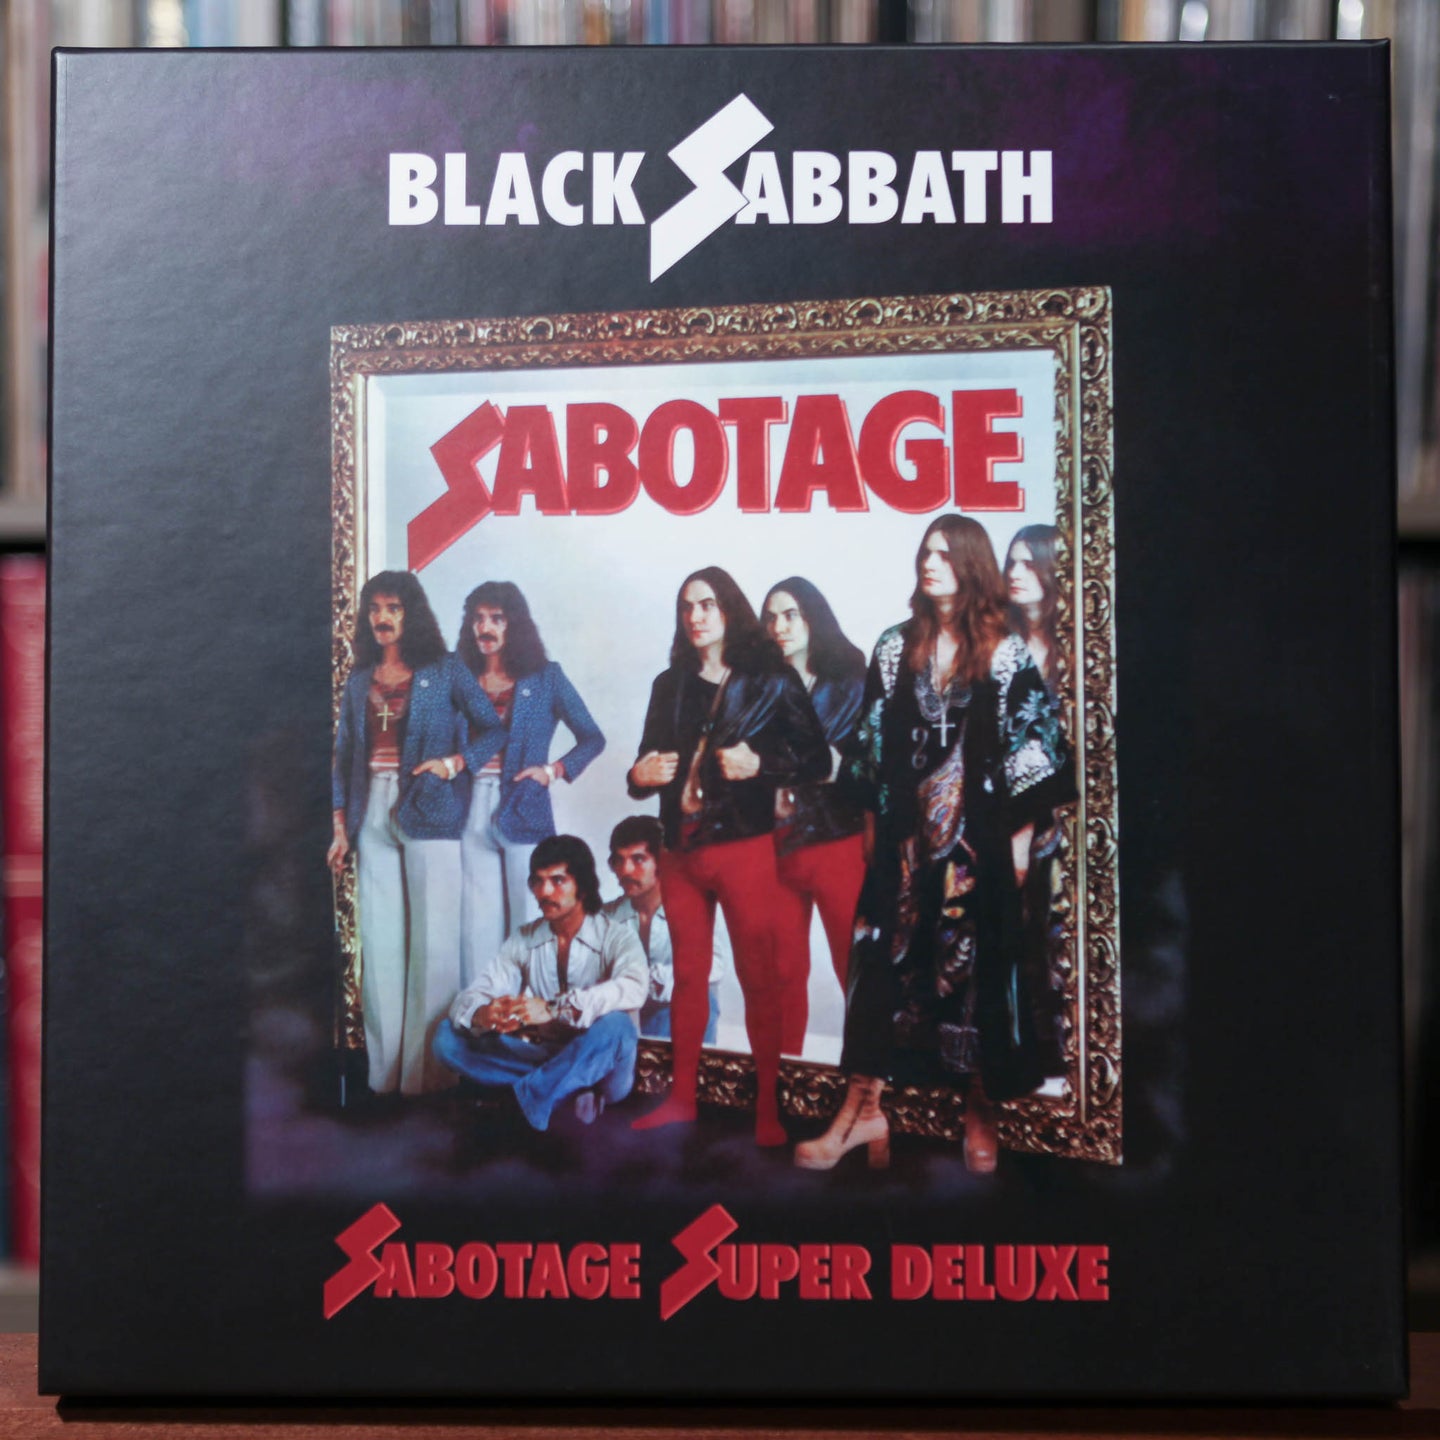 Black Sabbath - Sabotage Super Deluxe - 4LP - 2021 Warner